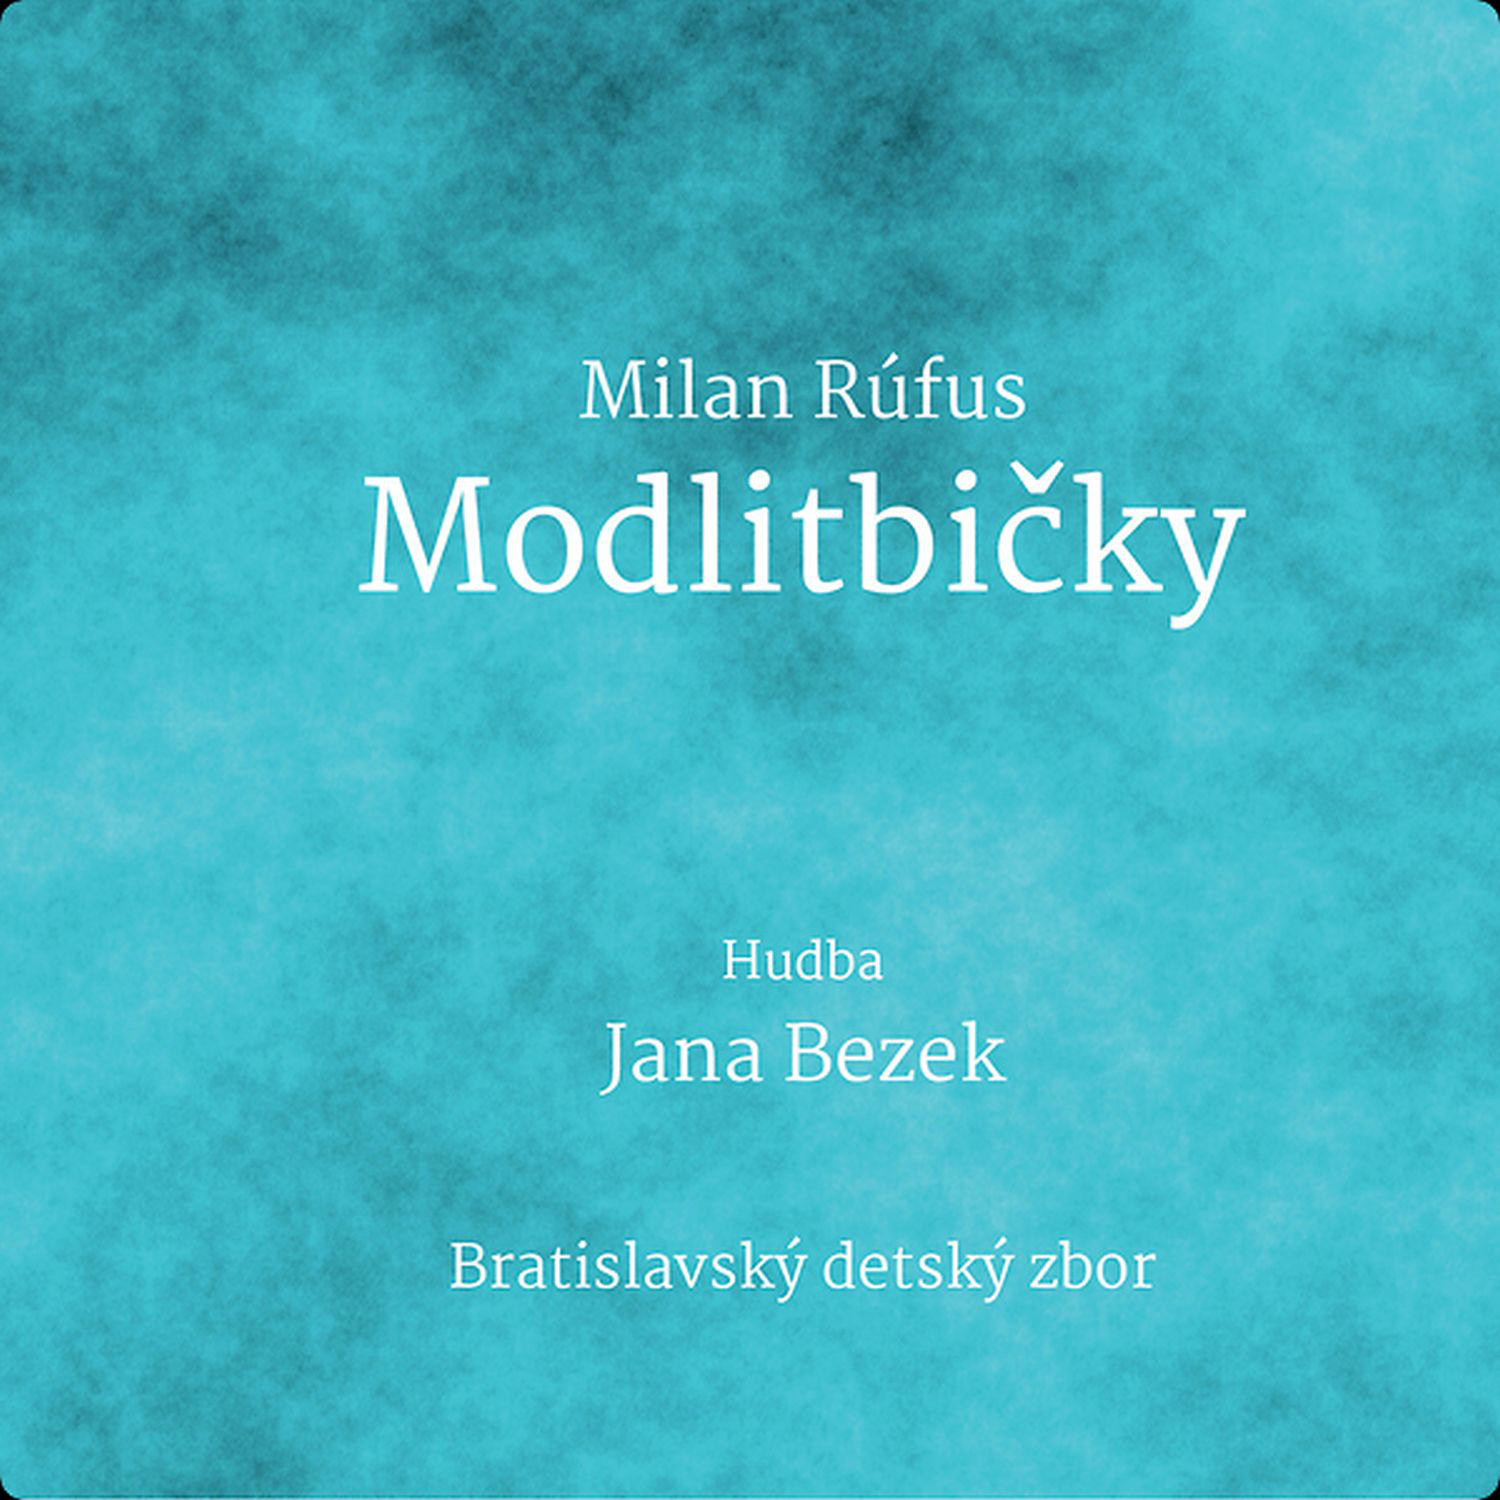 CD Shop - BEZEK JANA MODLITBICKY / MILAN RUFUS